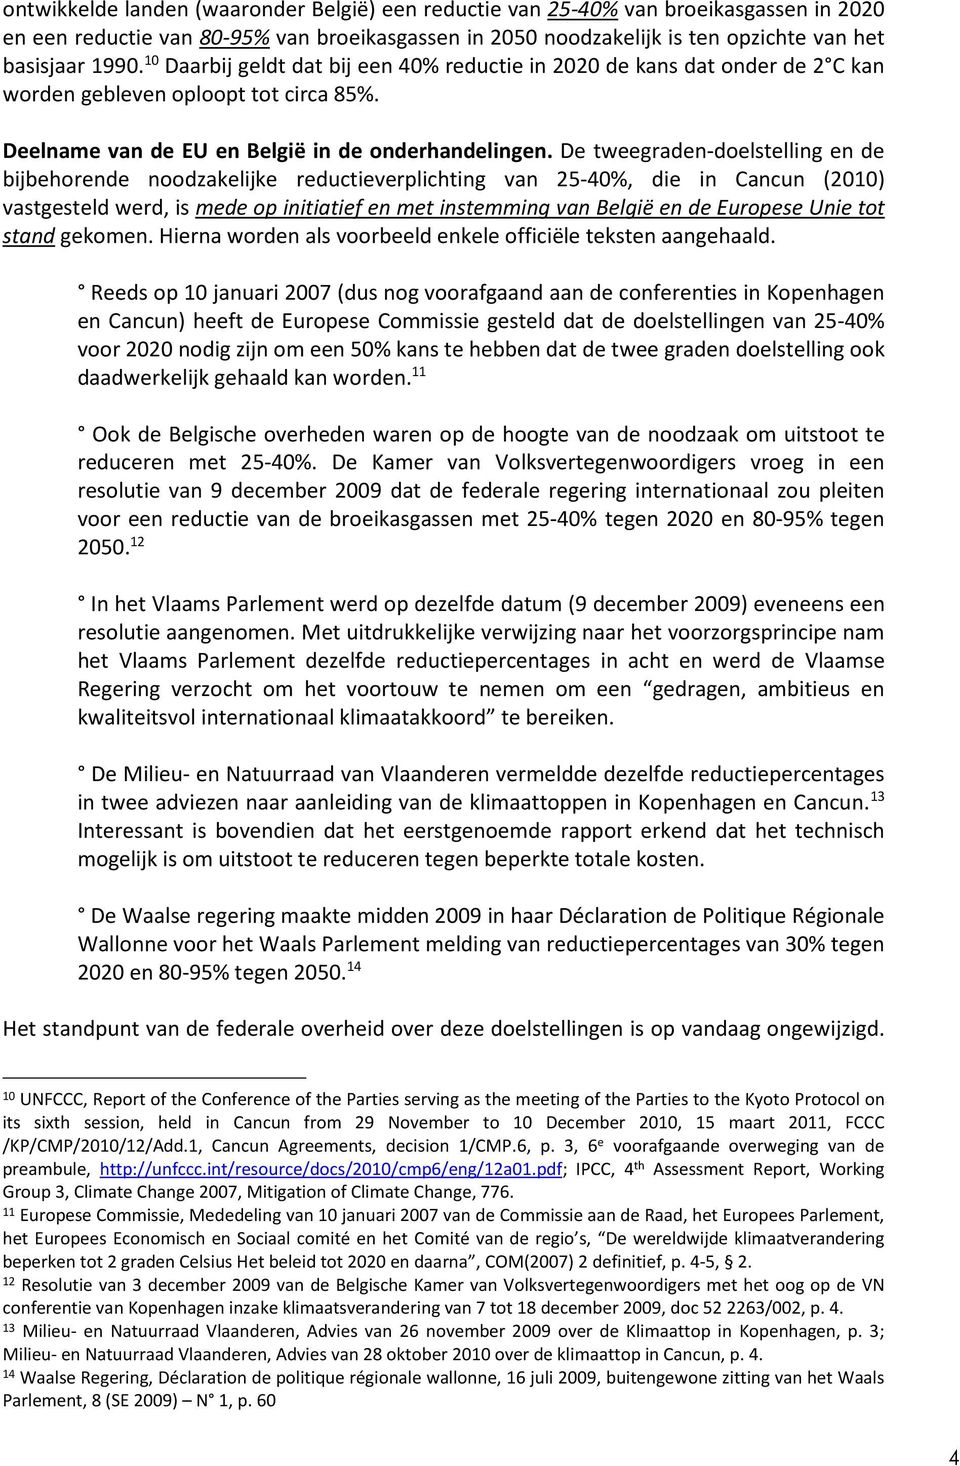 De tweegraden-doelstelling en de bijbehorende noodzakelijke reductieverplichting van 25-40%, die in Cancun (2010) vastgesteld werd, is mede op initiatief en met instemming van België en de Europese